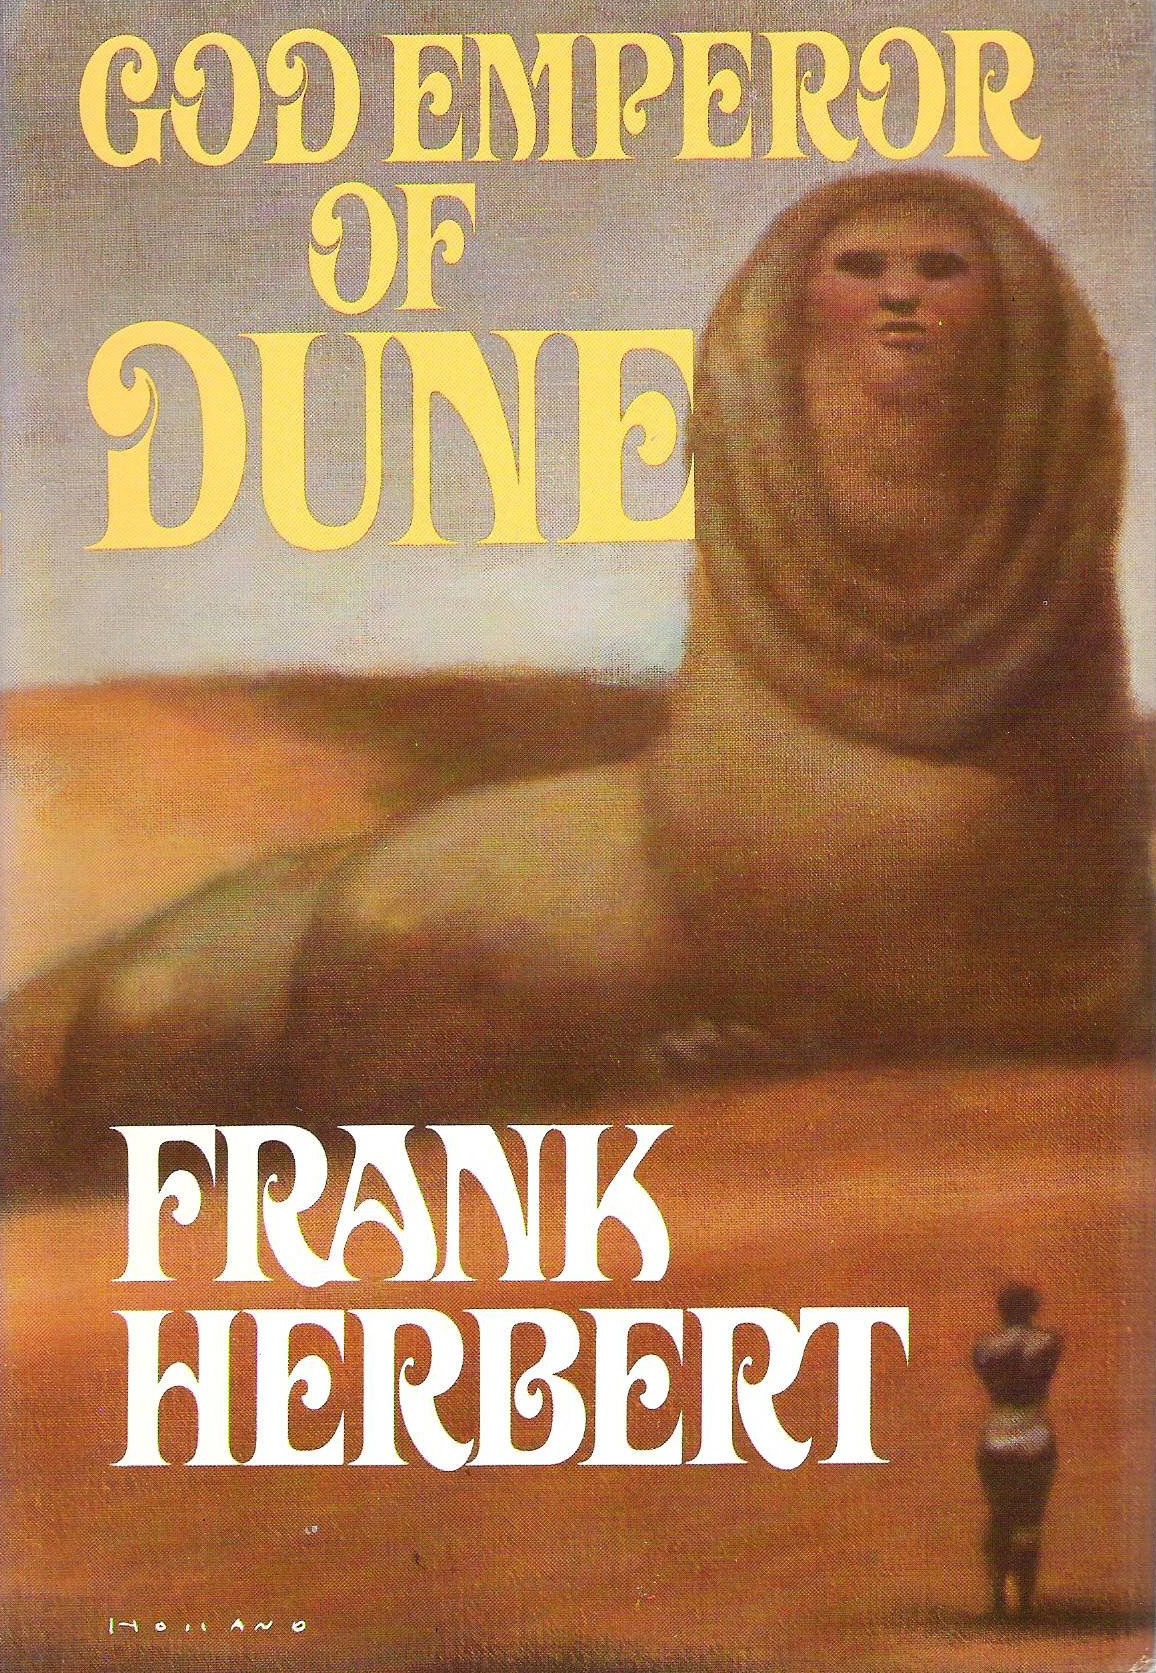 Una copertina del libro God Emperor of Dune, con un gigantesco verme della sabbia dal volto umano seduto nel deserto, una minuscola figura umana stagliata davanti ad esso, in piedi e di fronte ad esso